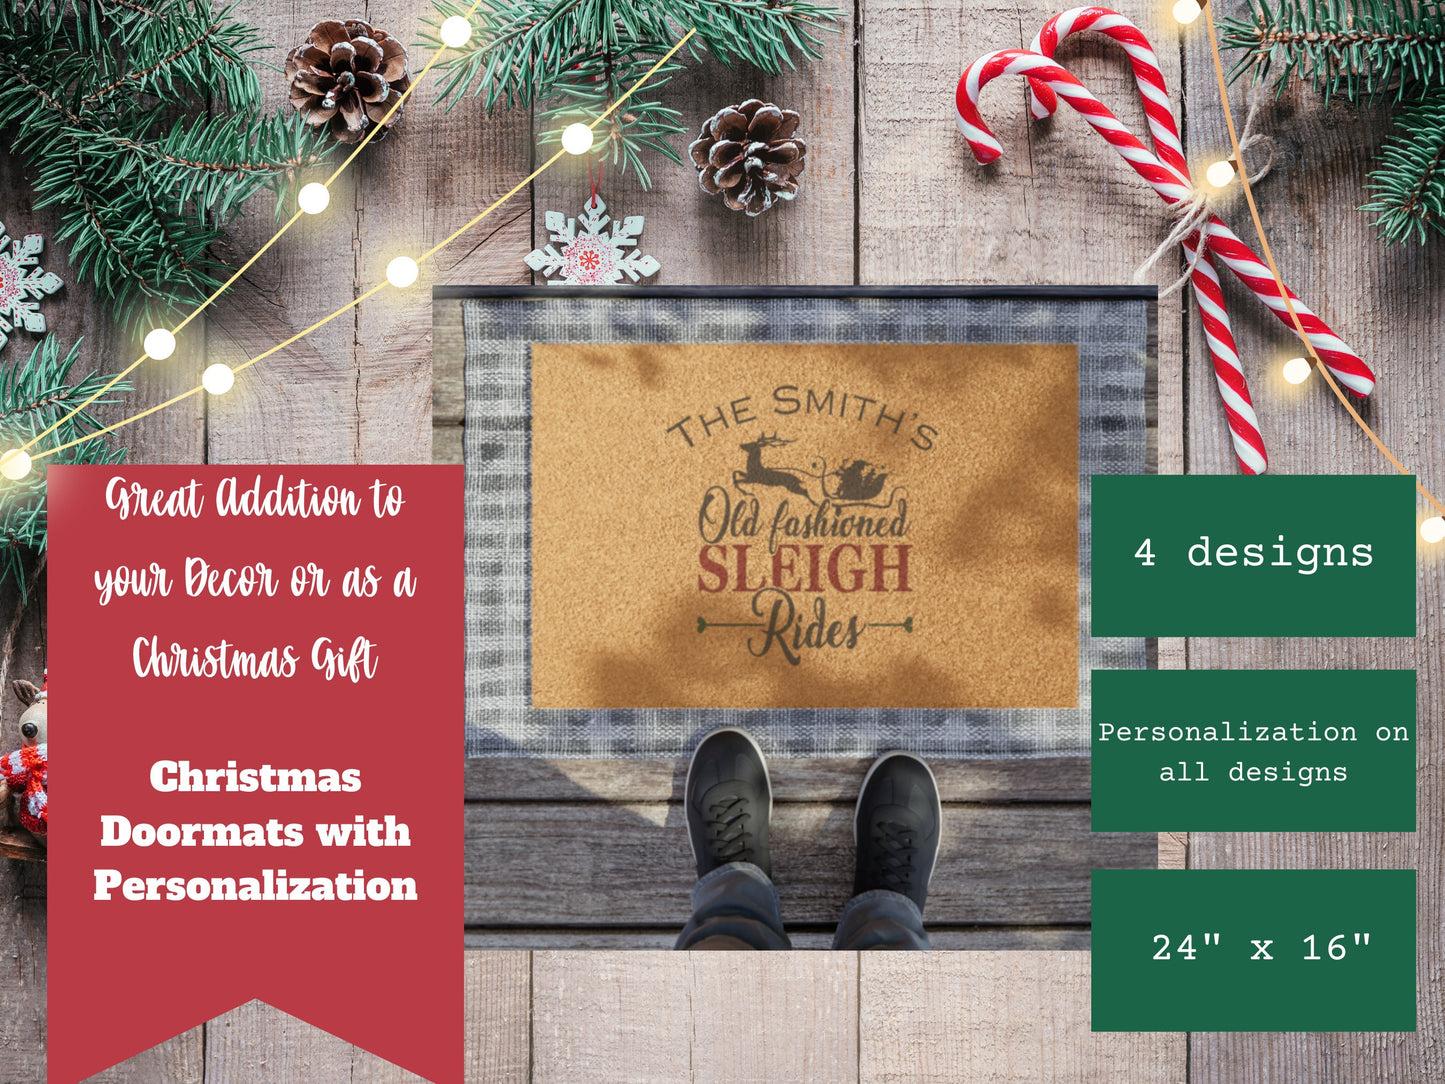 Christmas Doormat: Personalized Coir Mat with Vintage Car, Truck & Sleigh Designs, Custom Doormat, Merry Christmas Doormat